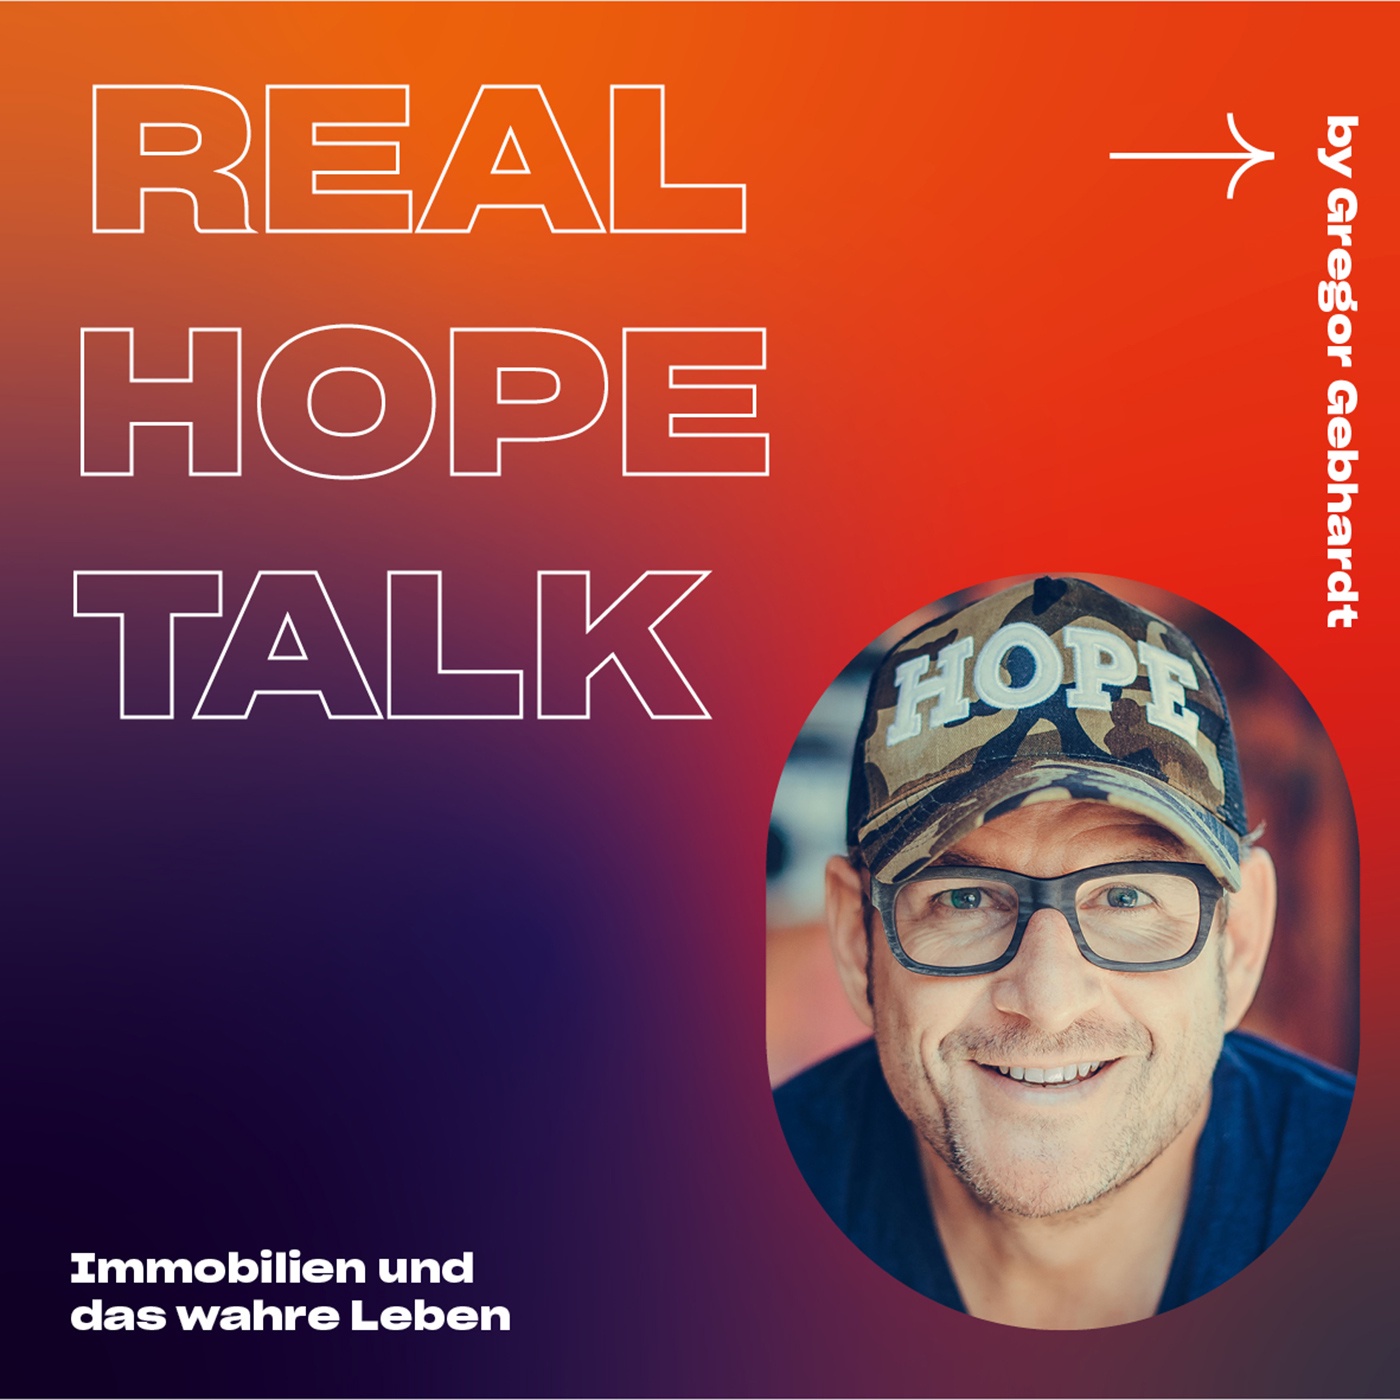 REAL HOPE TALK by Gregor Gebhardt